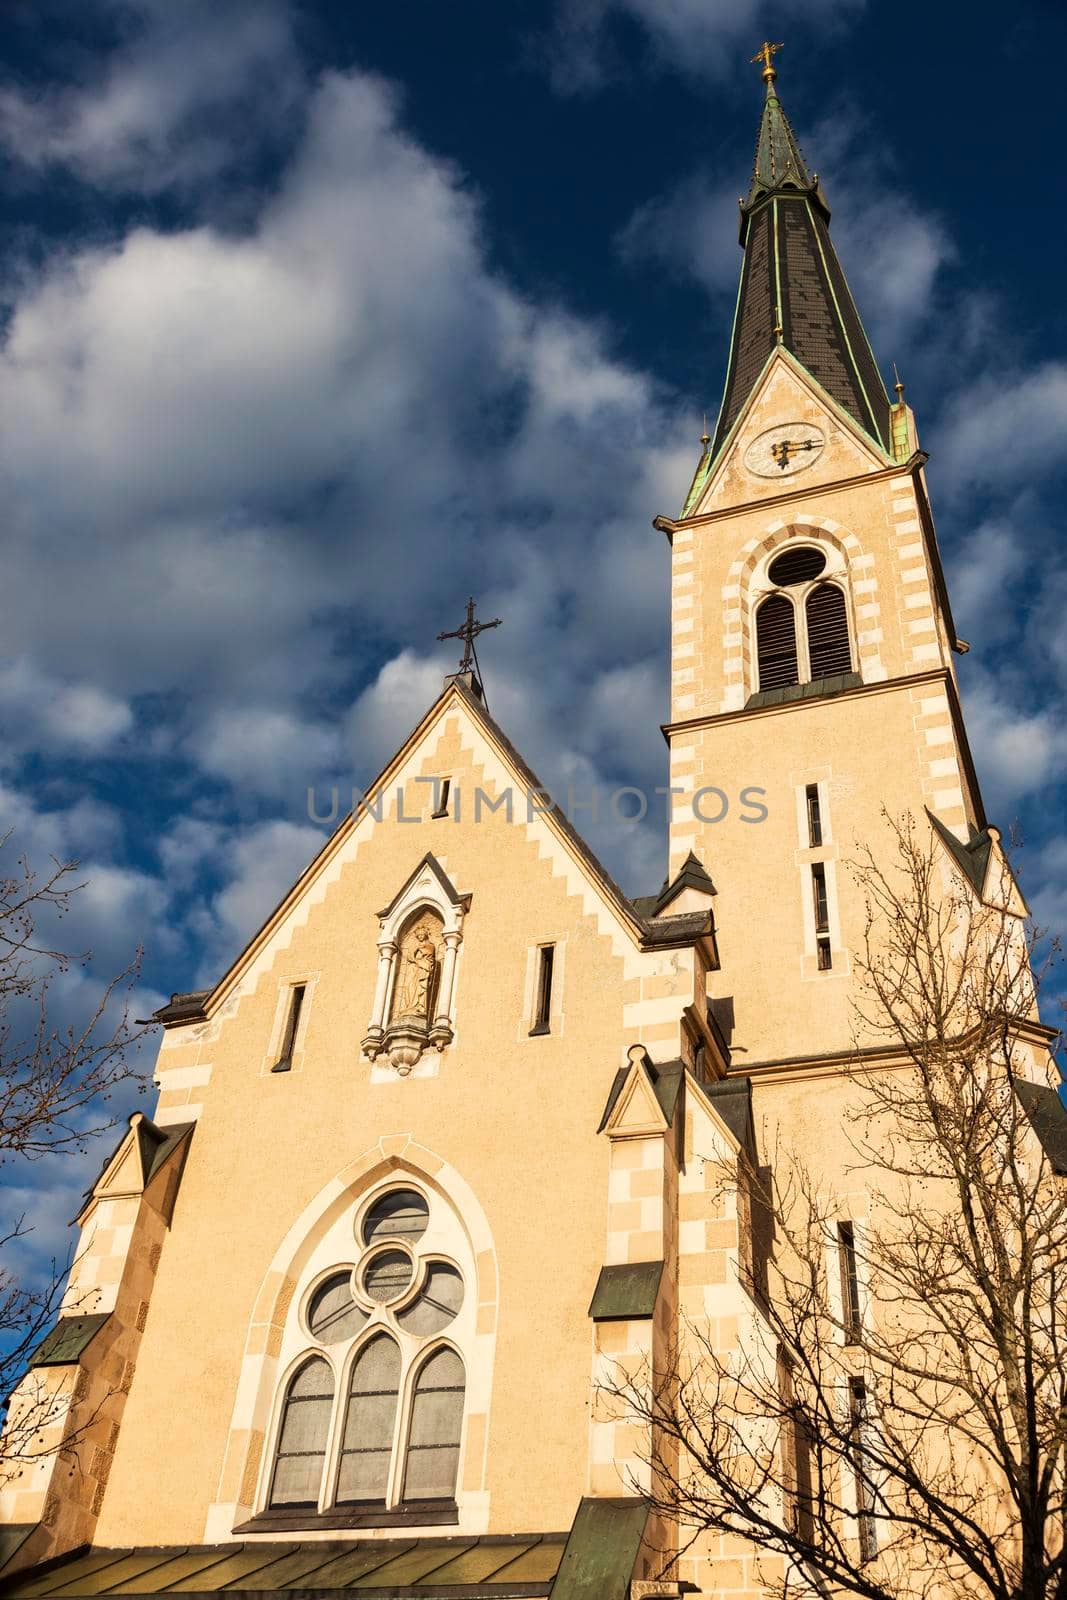 St. Nicholas Church in Villach. Villach, Carinthia, Austria.